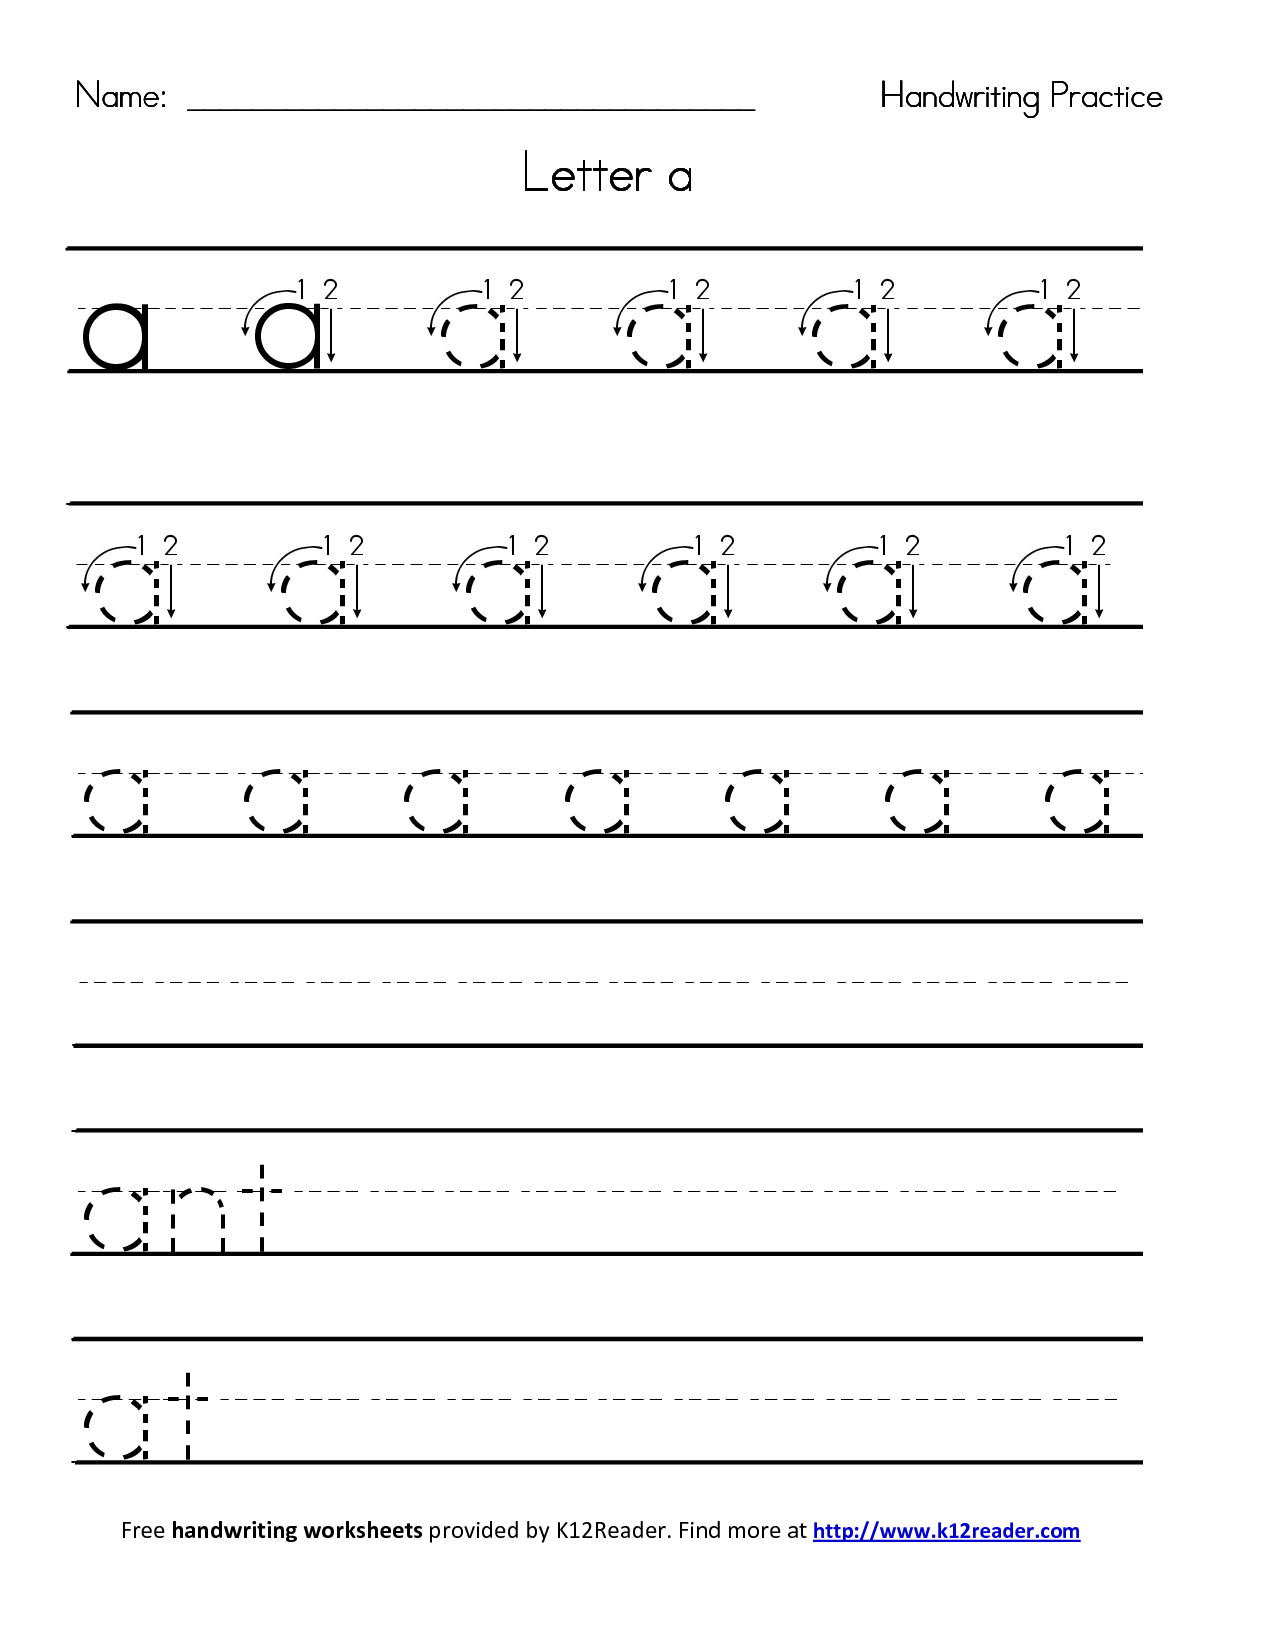 14 Best Images Of Penmanship Practice Worksheets Free Printable Handwriting Practice Worksheet 